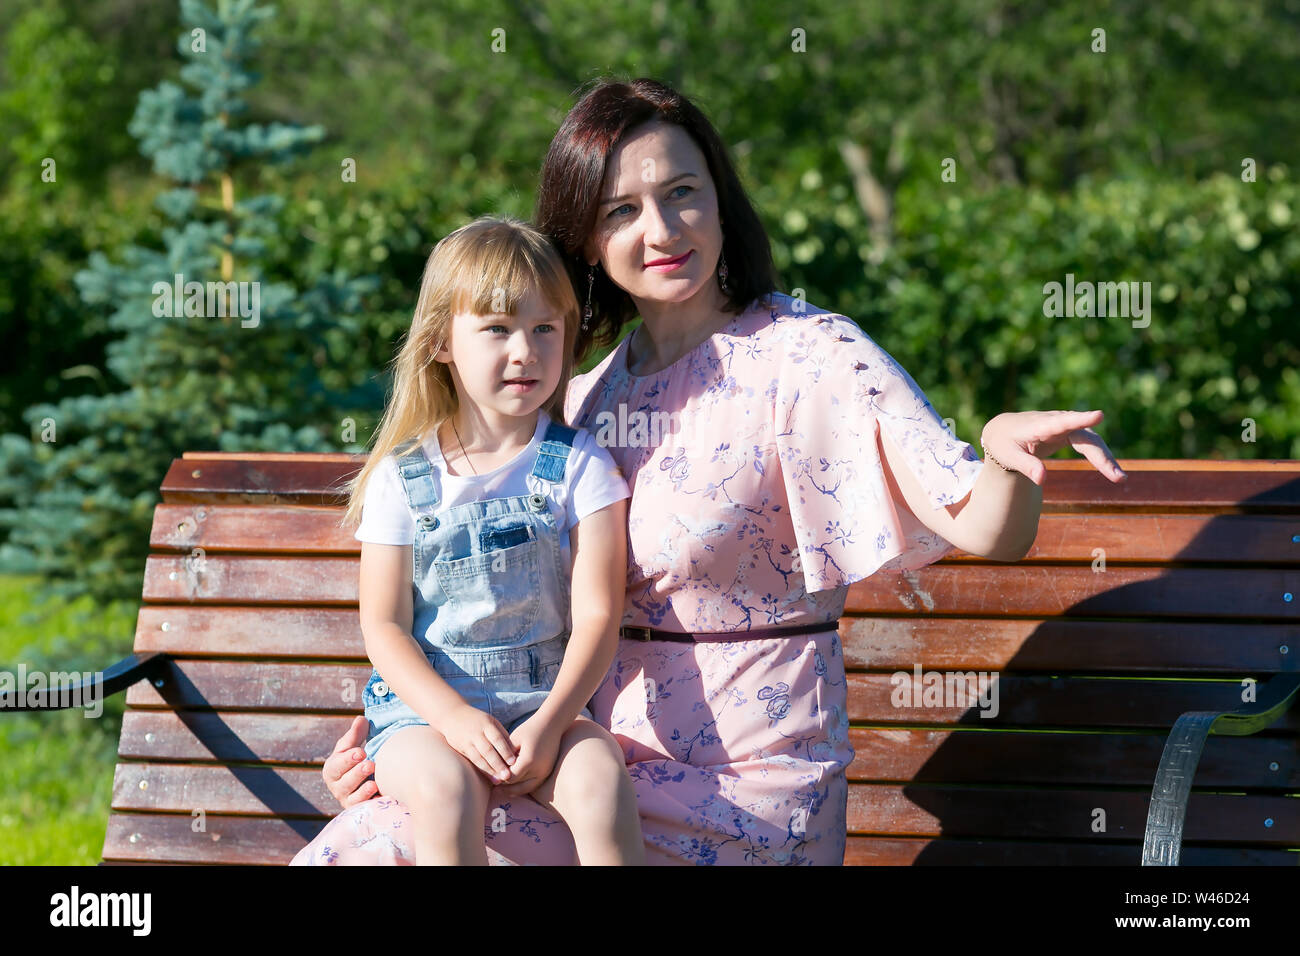 Junge Frau mit einem kleinen Mädchen auf einer Bank im Jahr Park. Stockfoto